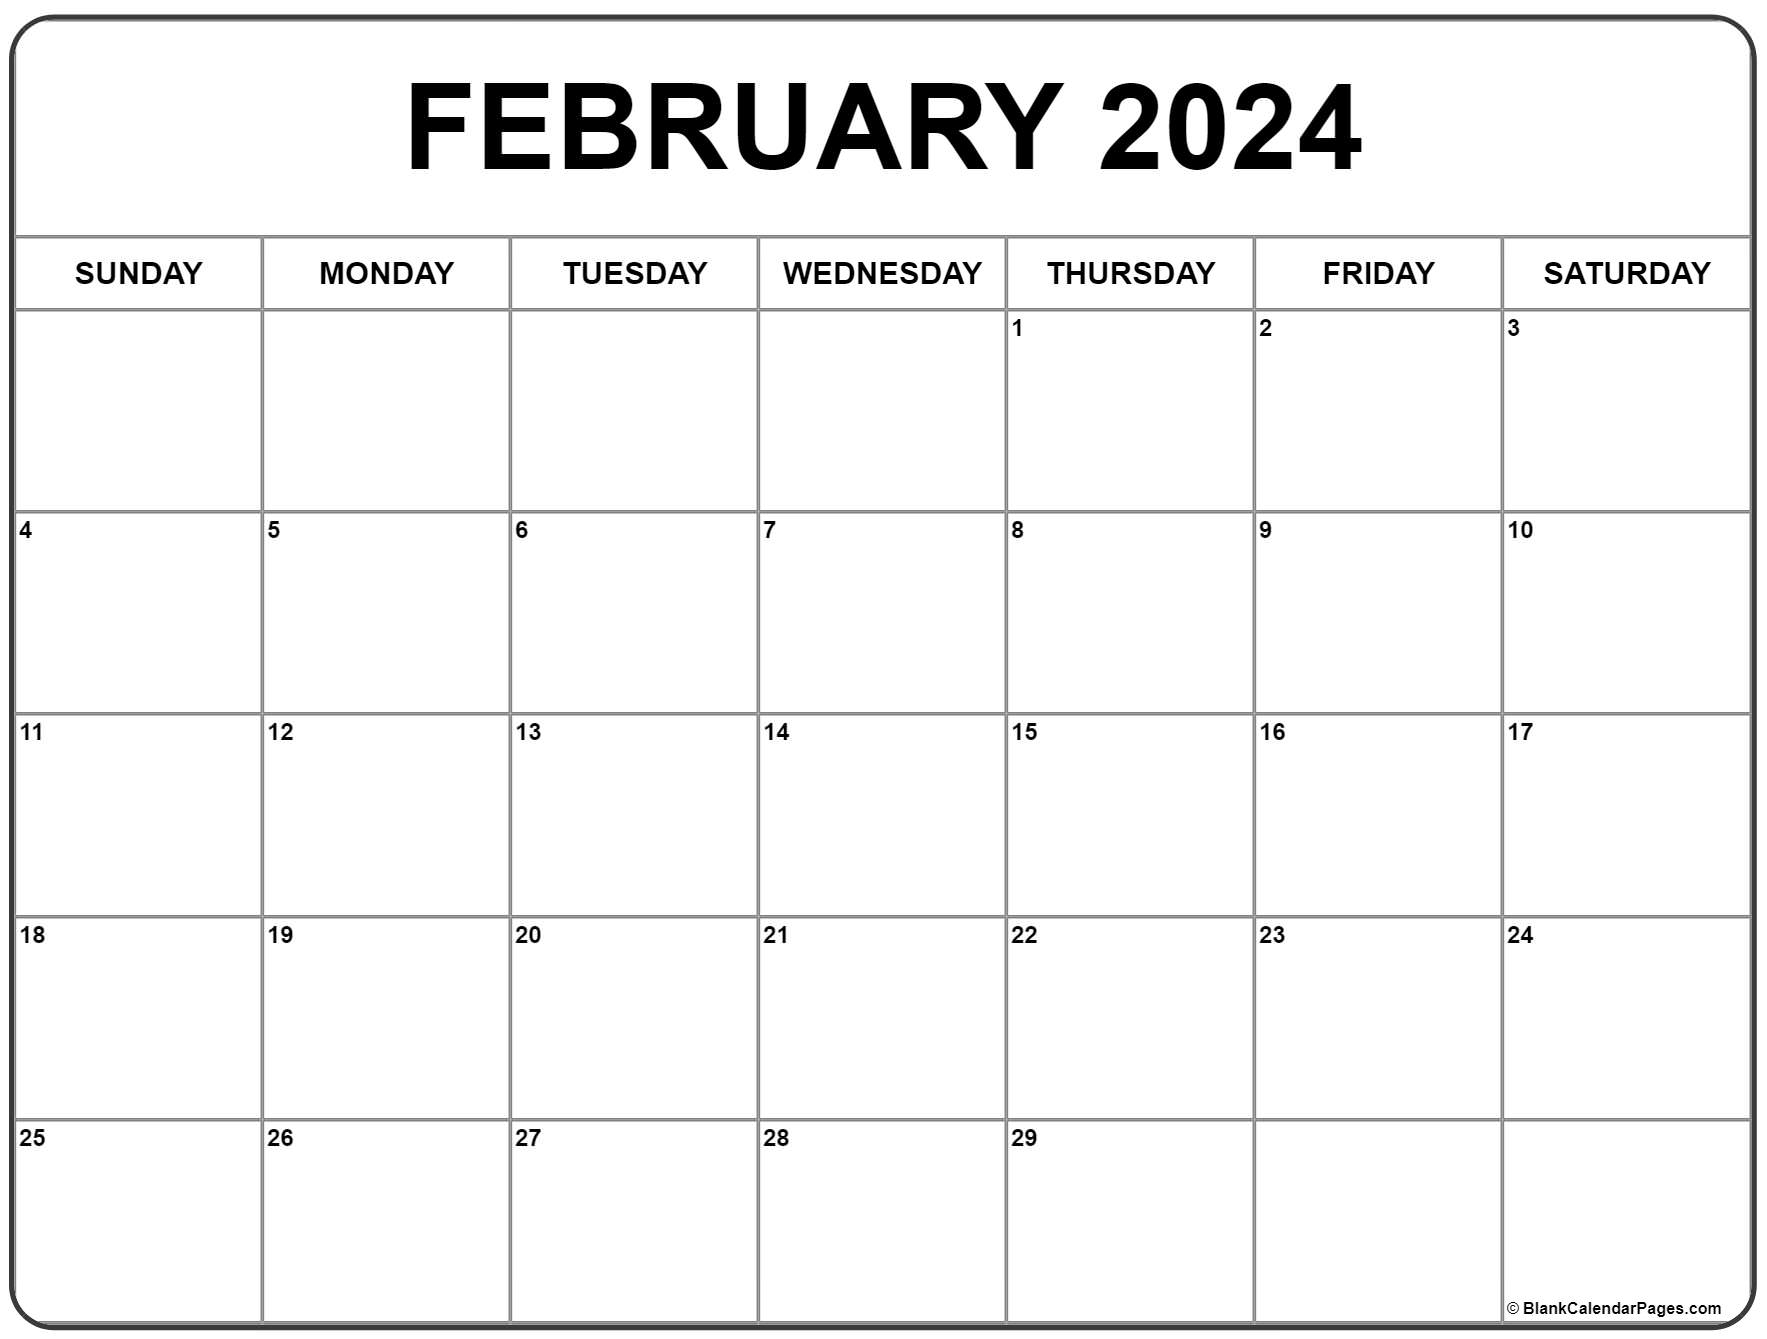 February 2024 Calendar | Free Printable Calendar for Printable Calendar Feb 2024